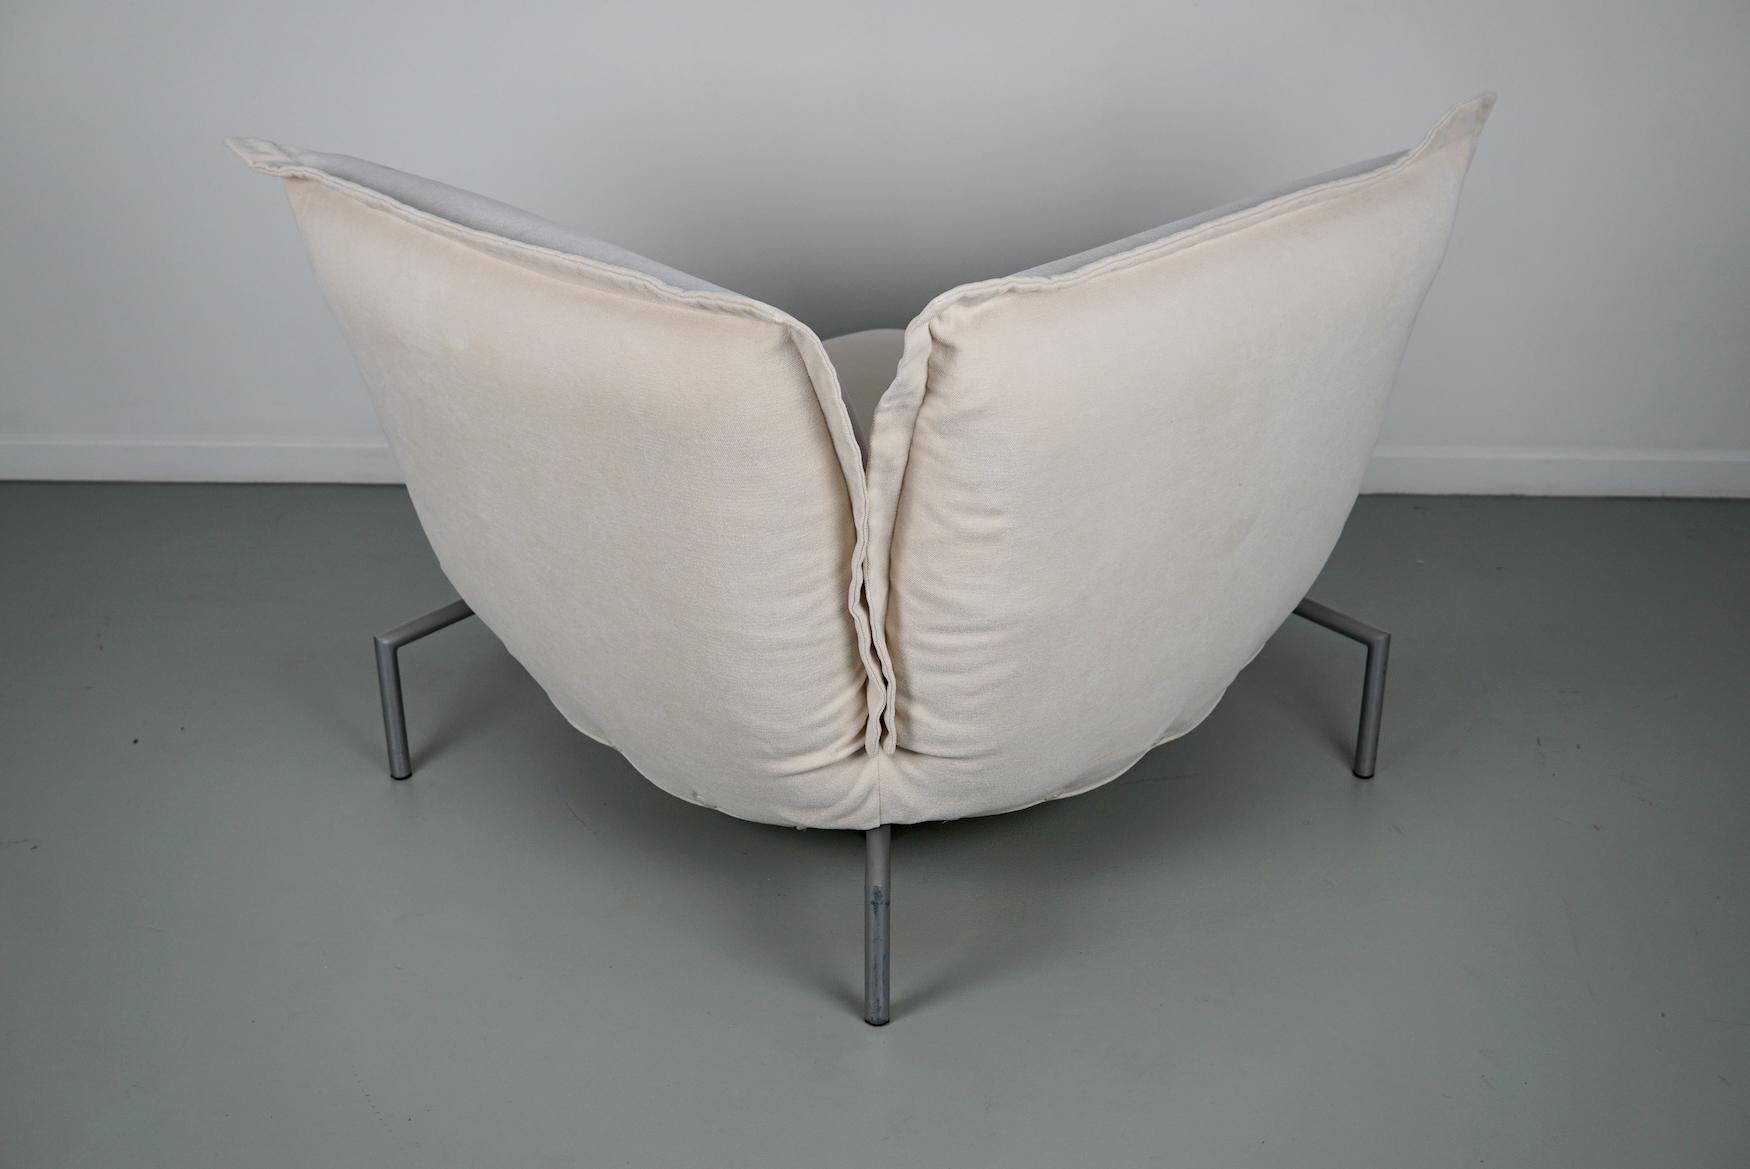 Calin Corner Sofa Set by Pascal Mourgue for Cinna / Ligne Roset - 4 seater 10